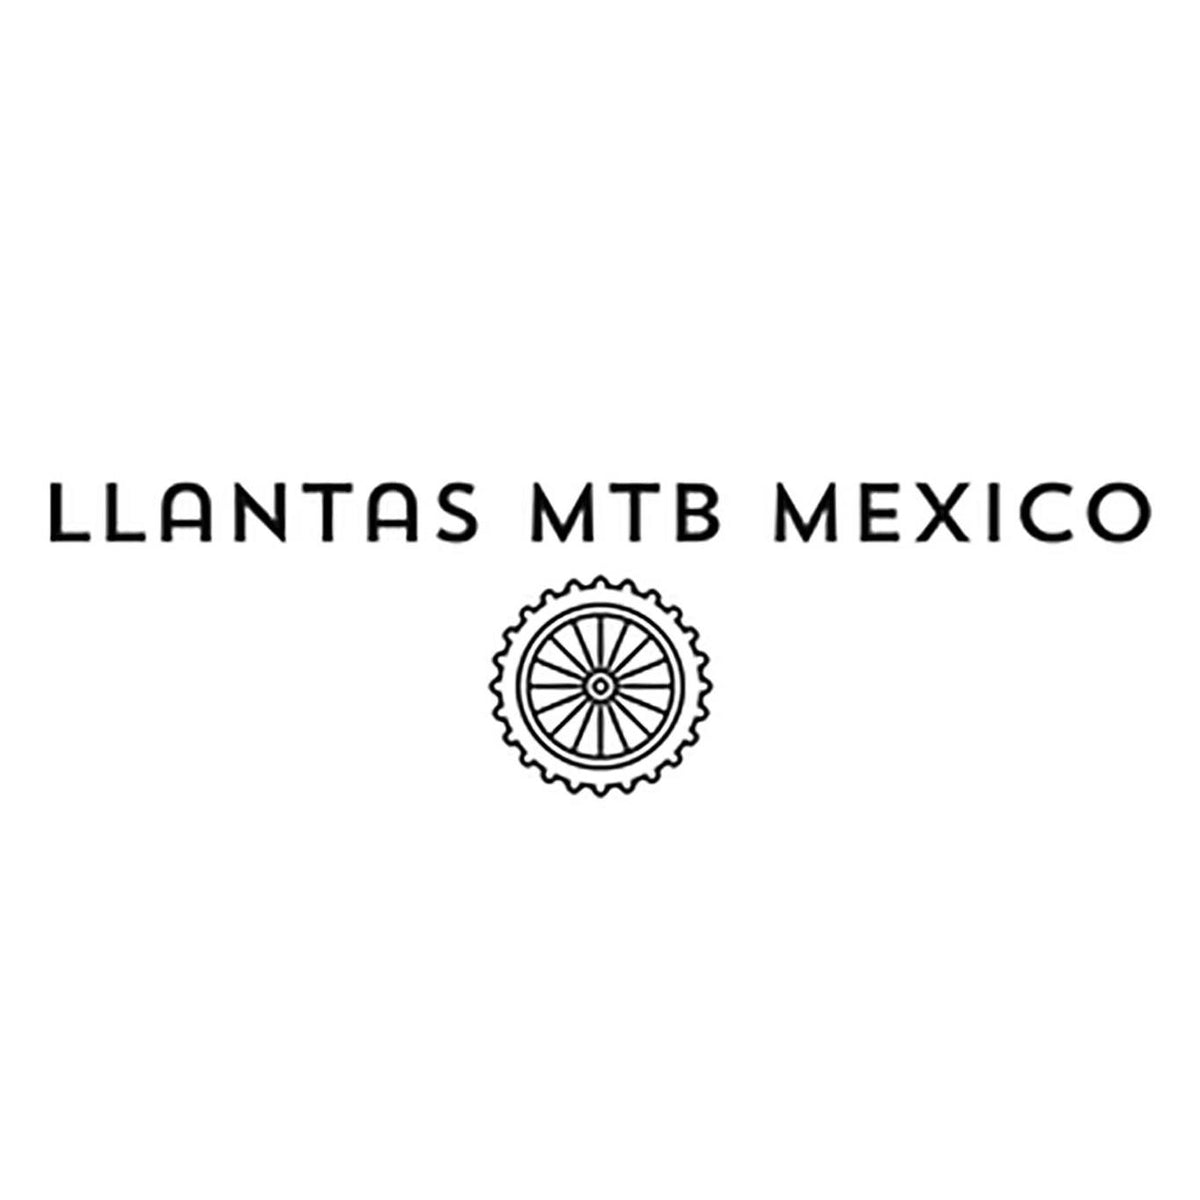 Llantas Mtb Mexico